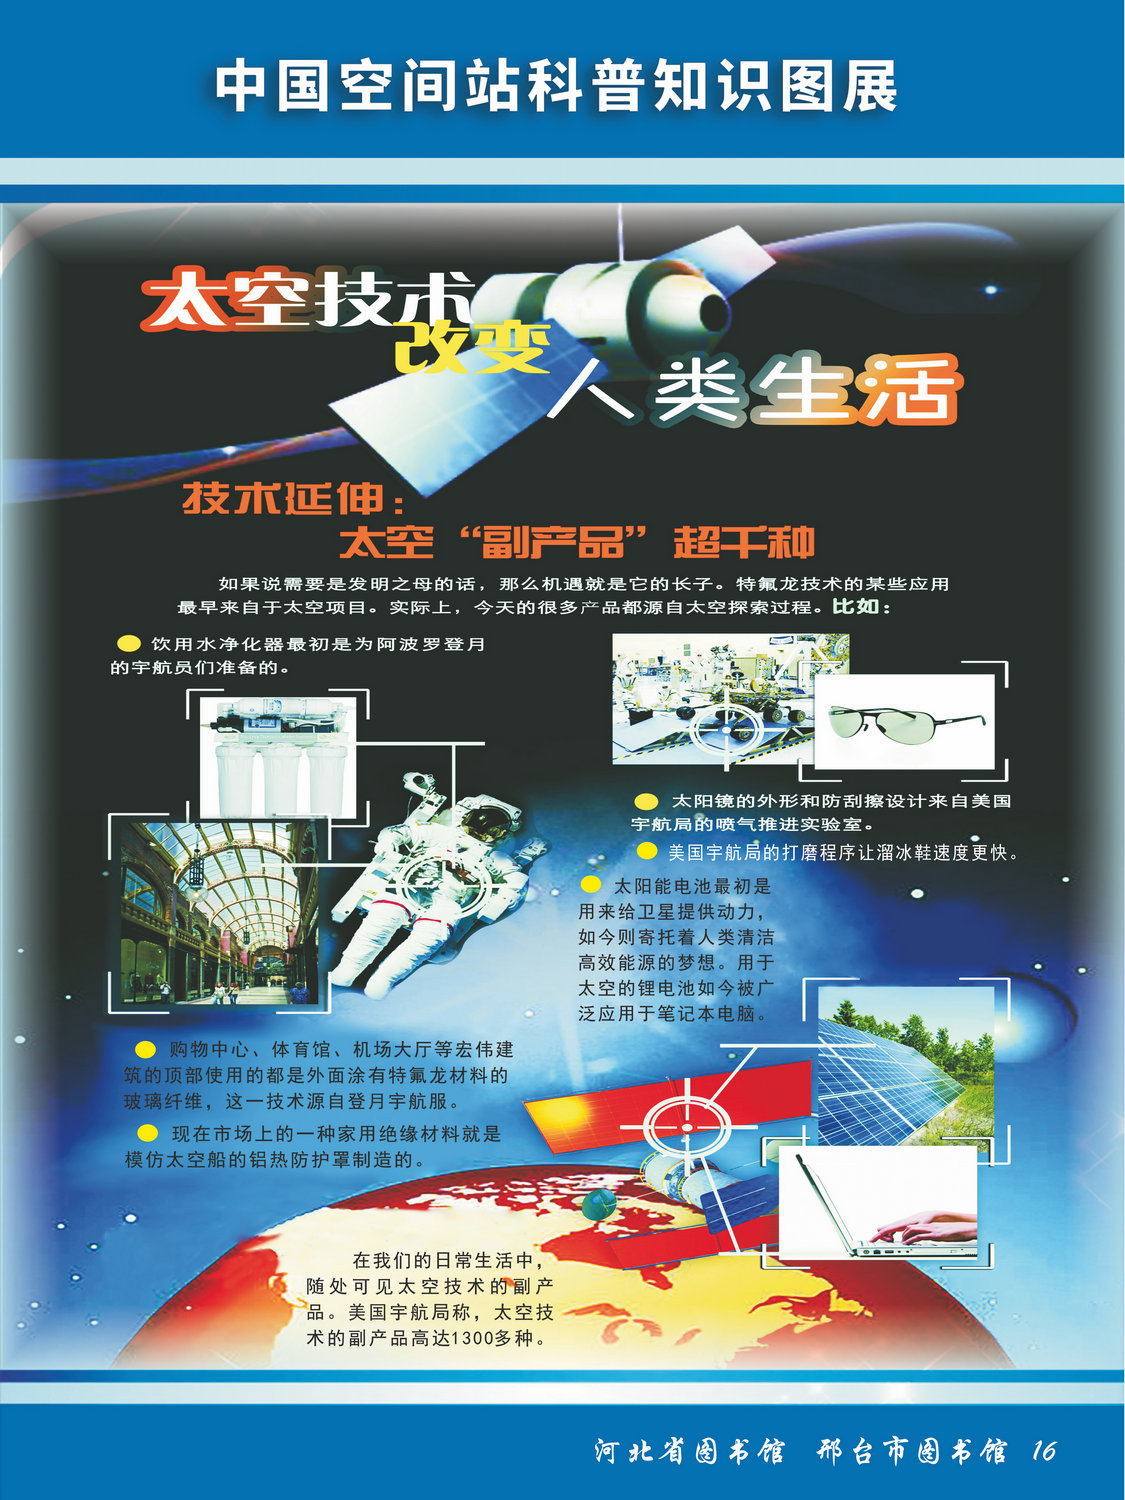 中国空间站科普知识图文展_图16